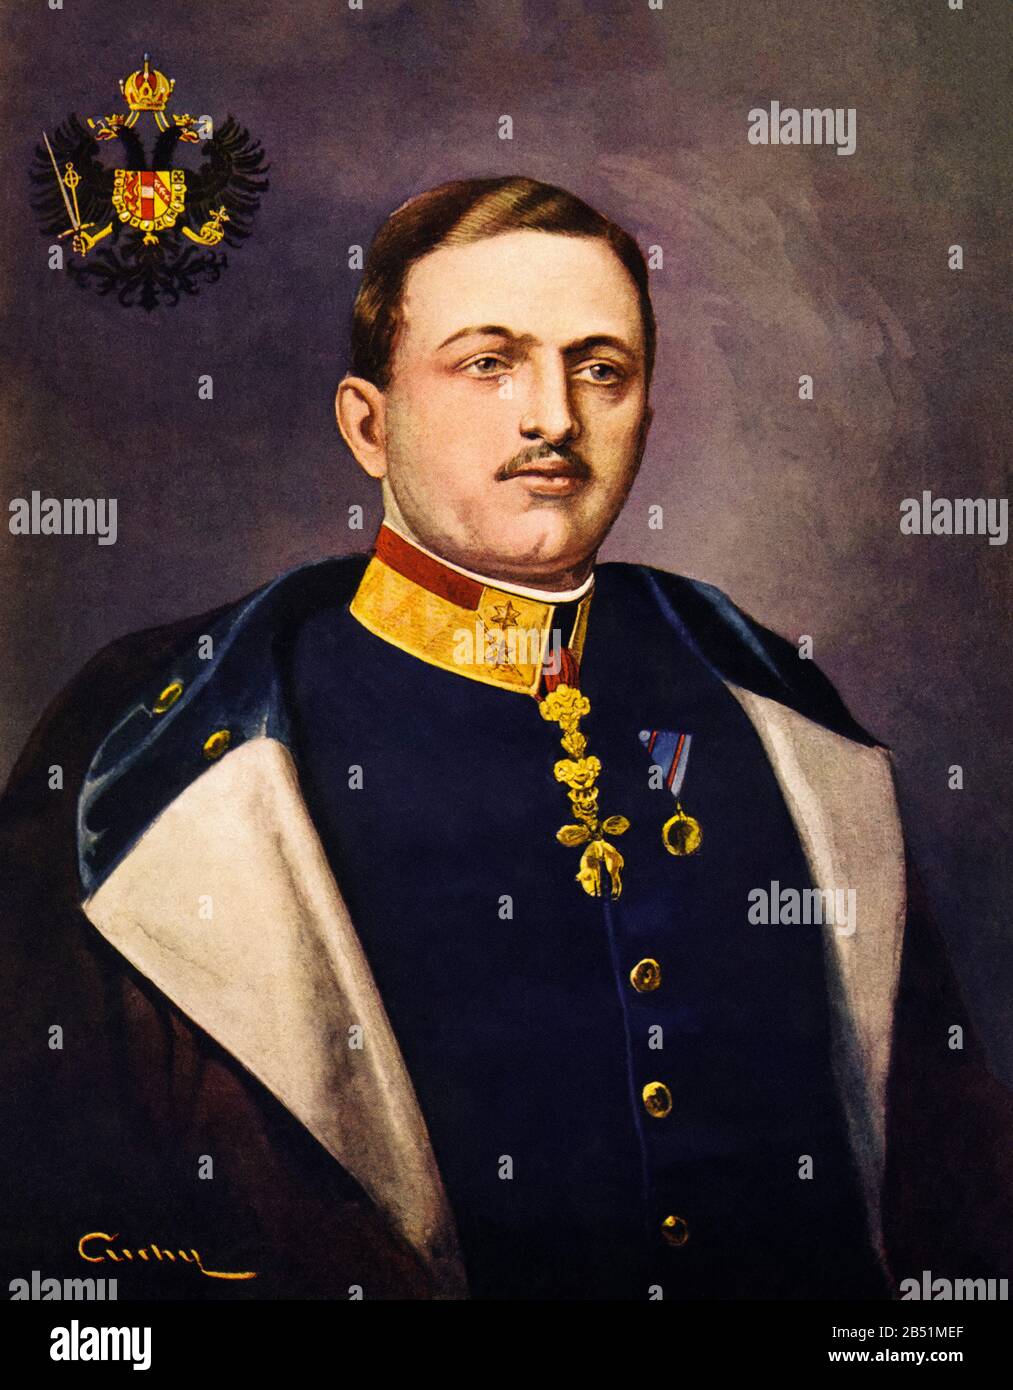 Farbporträt von Karl von Habsburg-Lorraine und Sachsen. Karl Franz Josef Ludwig Hubert Georg Maria von Habsburg-Lothringen (von 1888-1922), war der l Stockfoto